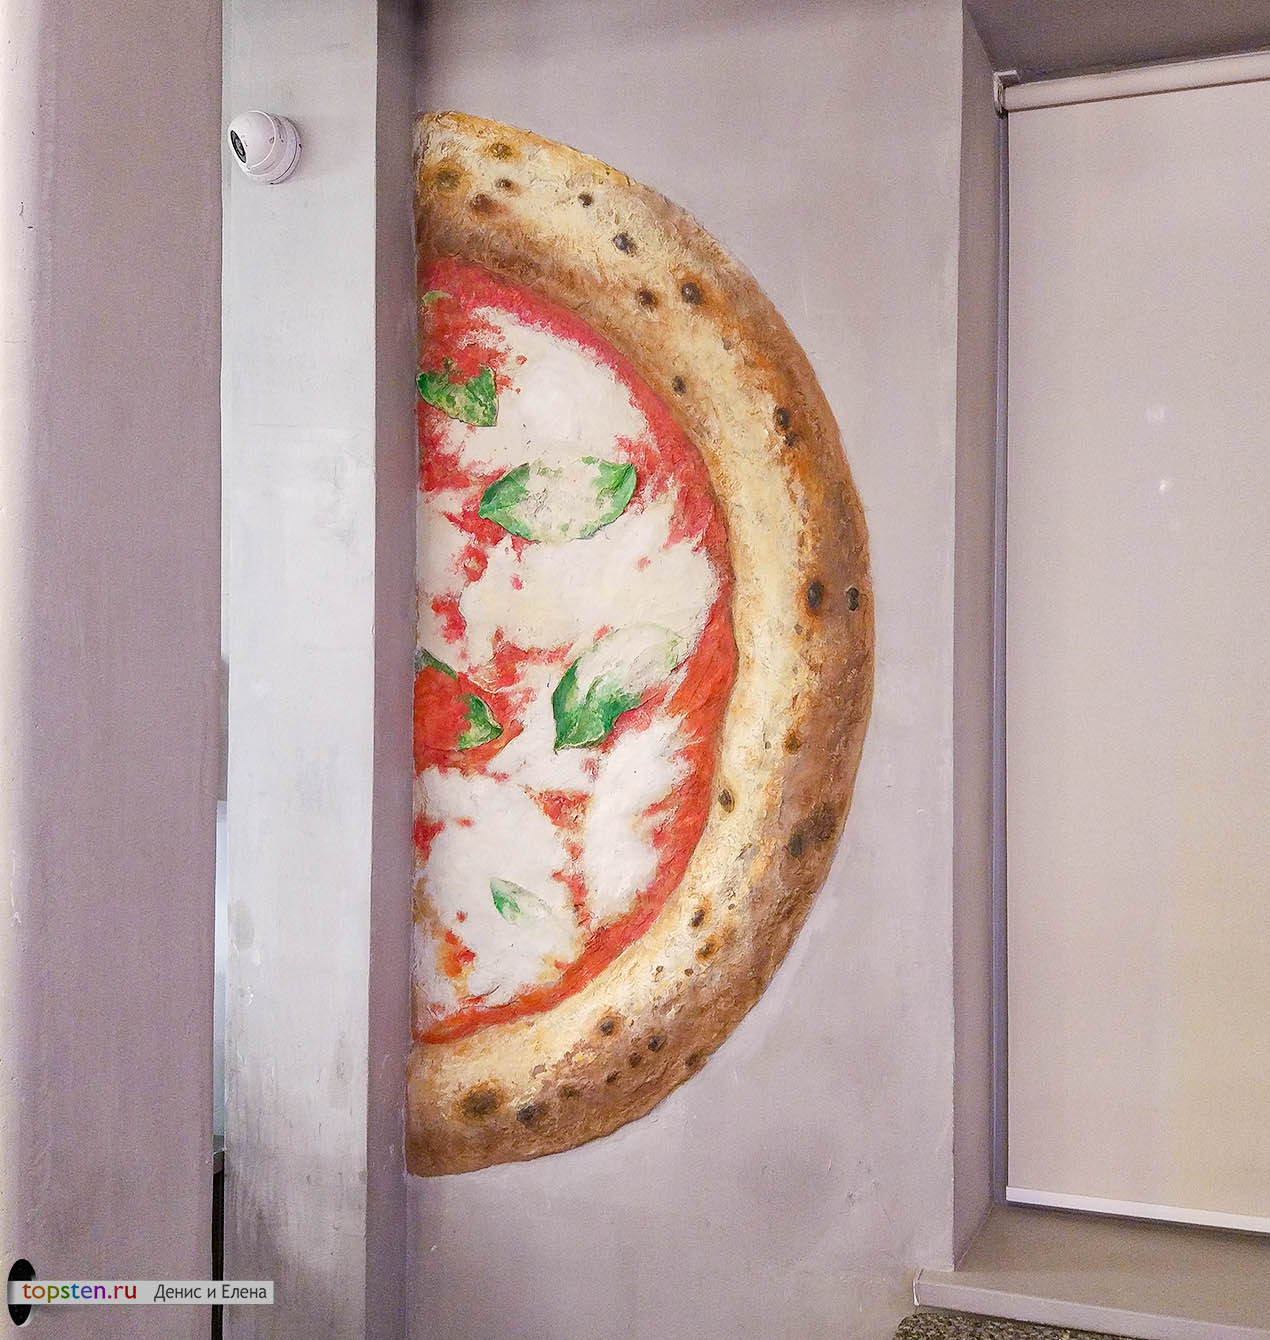 объемная большая пицца на стене кафе сделана в виде барельефа из гипса и расписана акриловыми красками